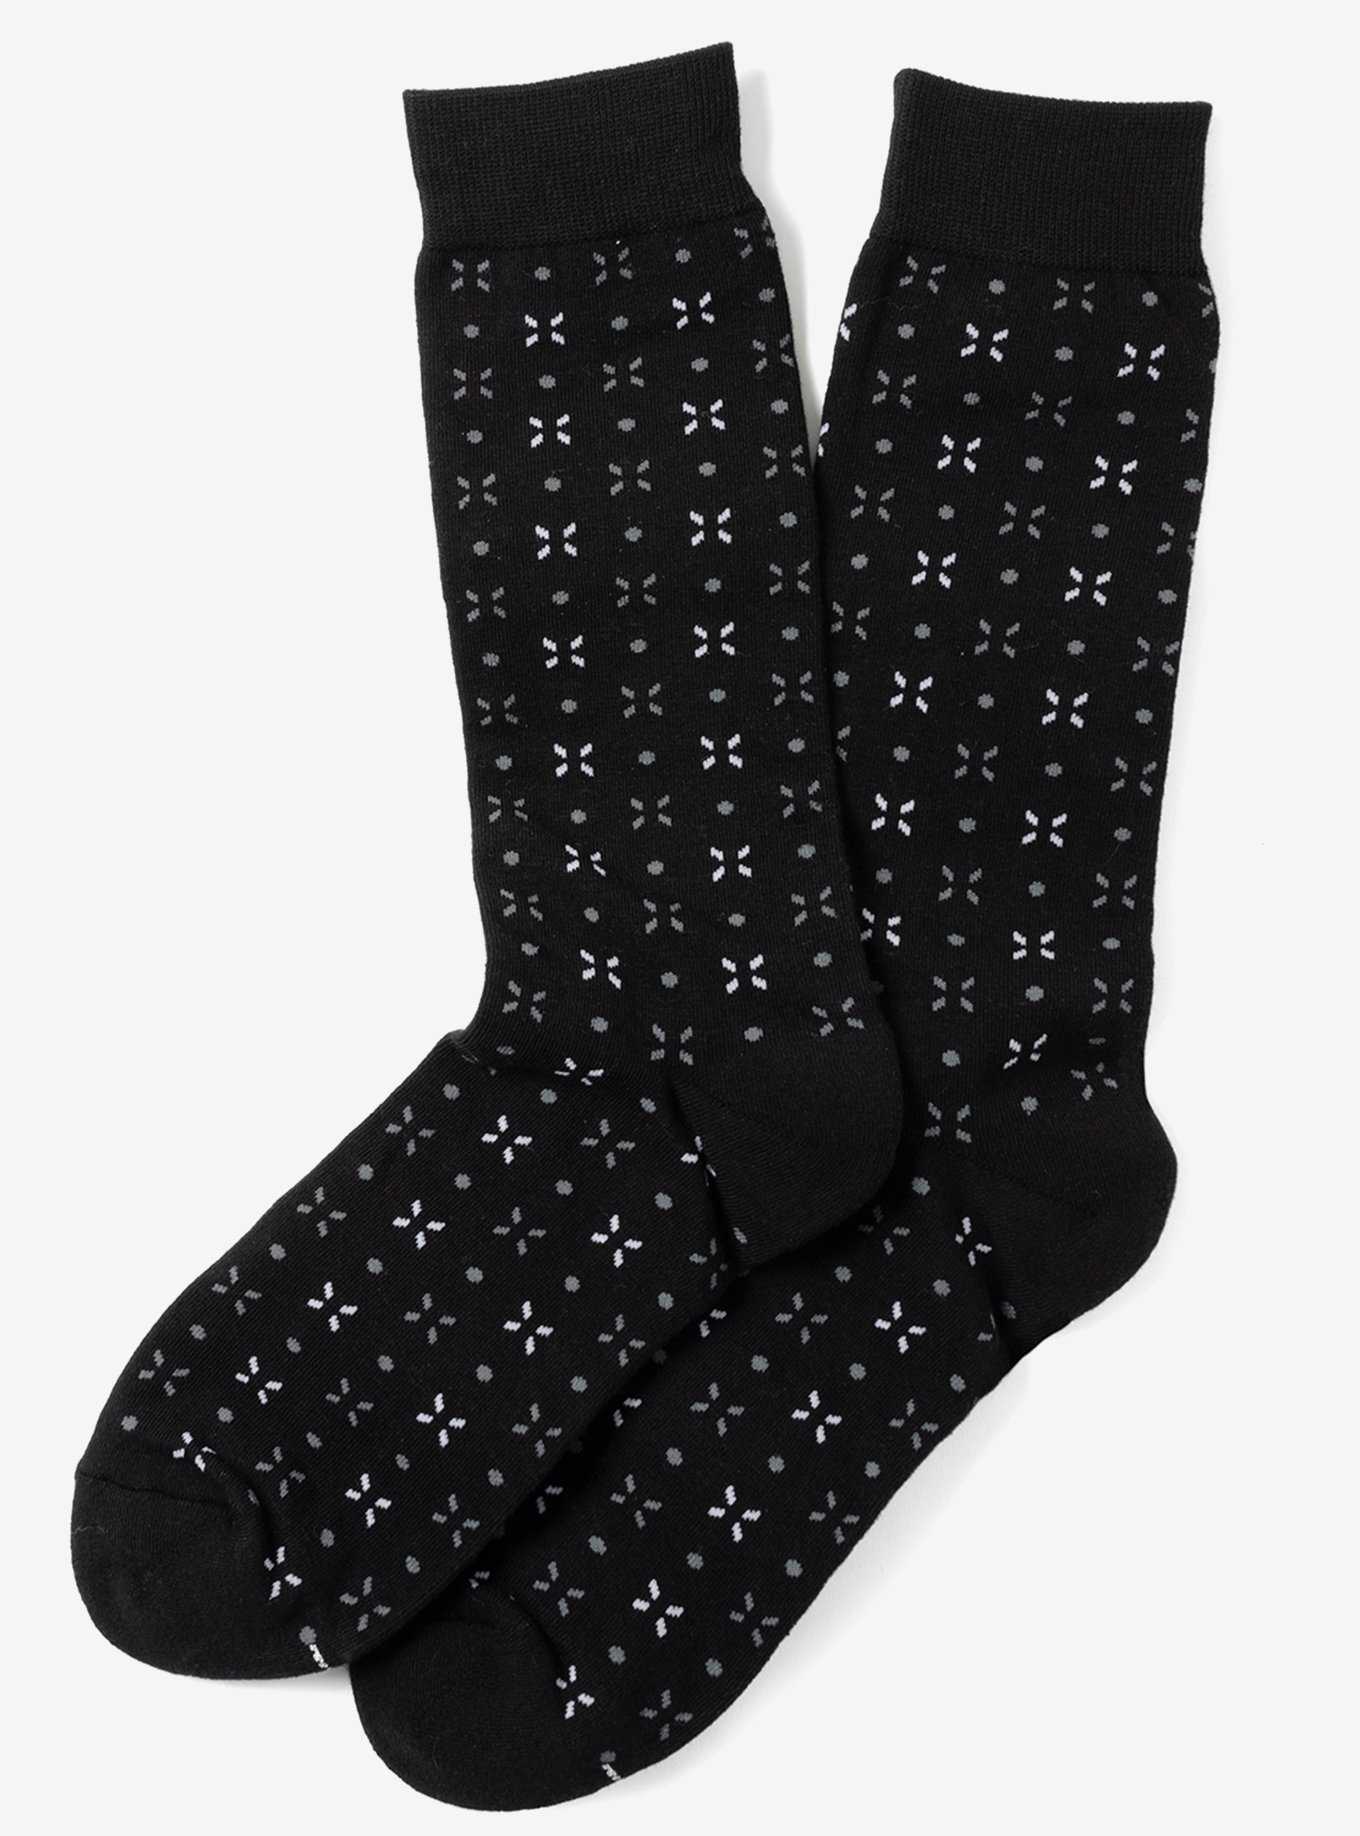 Dot Patterned Black Crew Socks, , hi-res